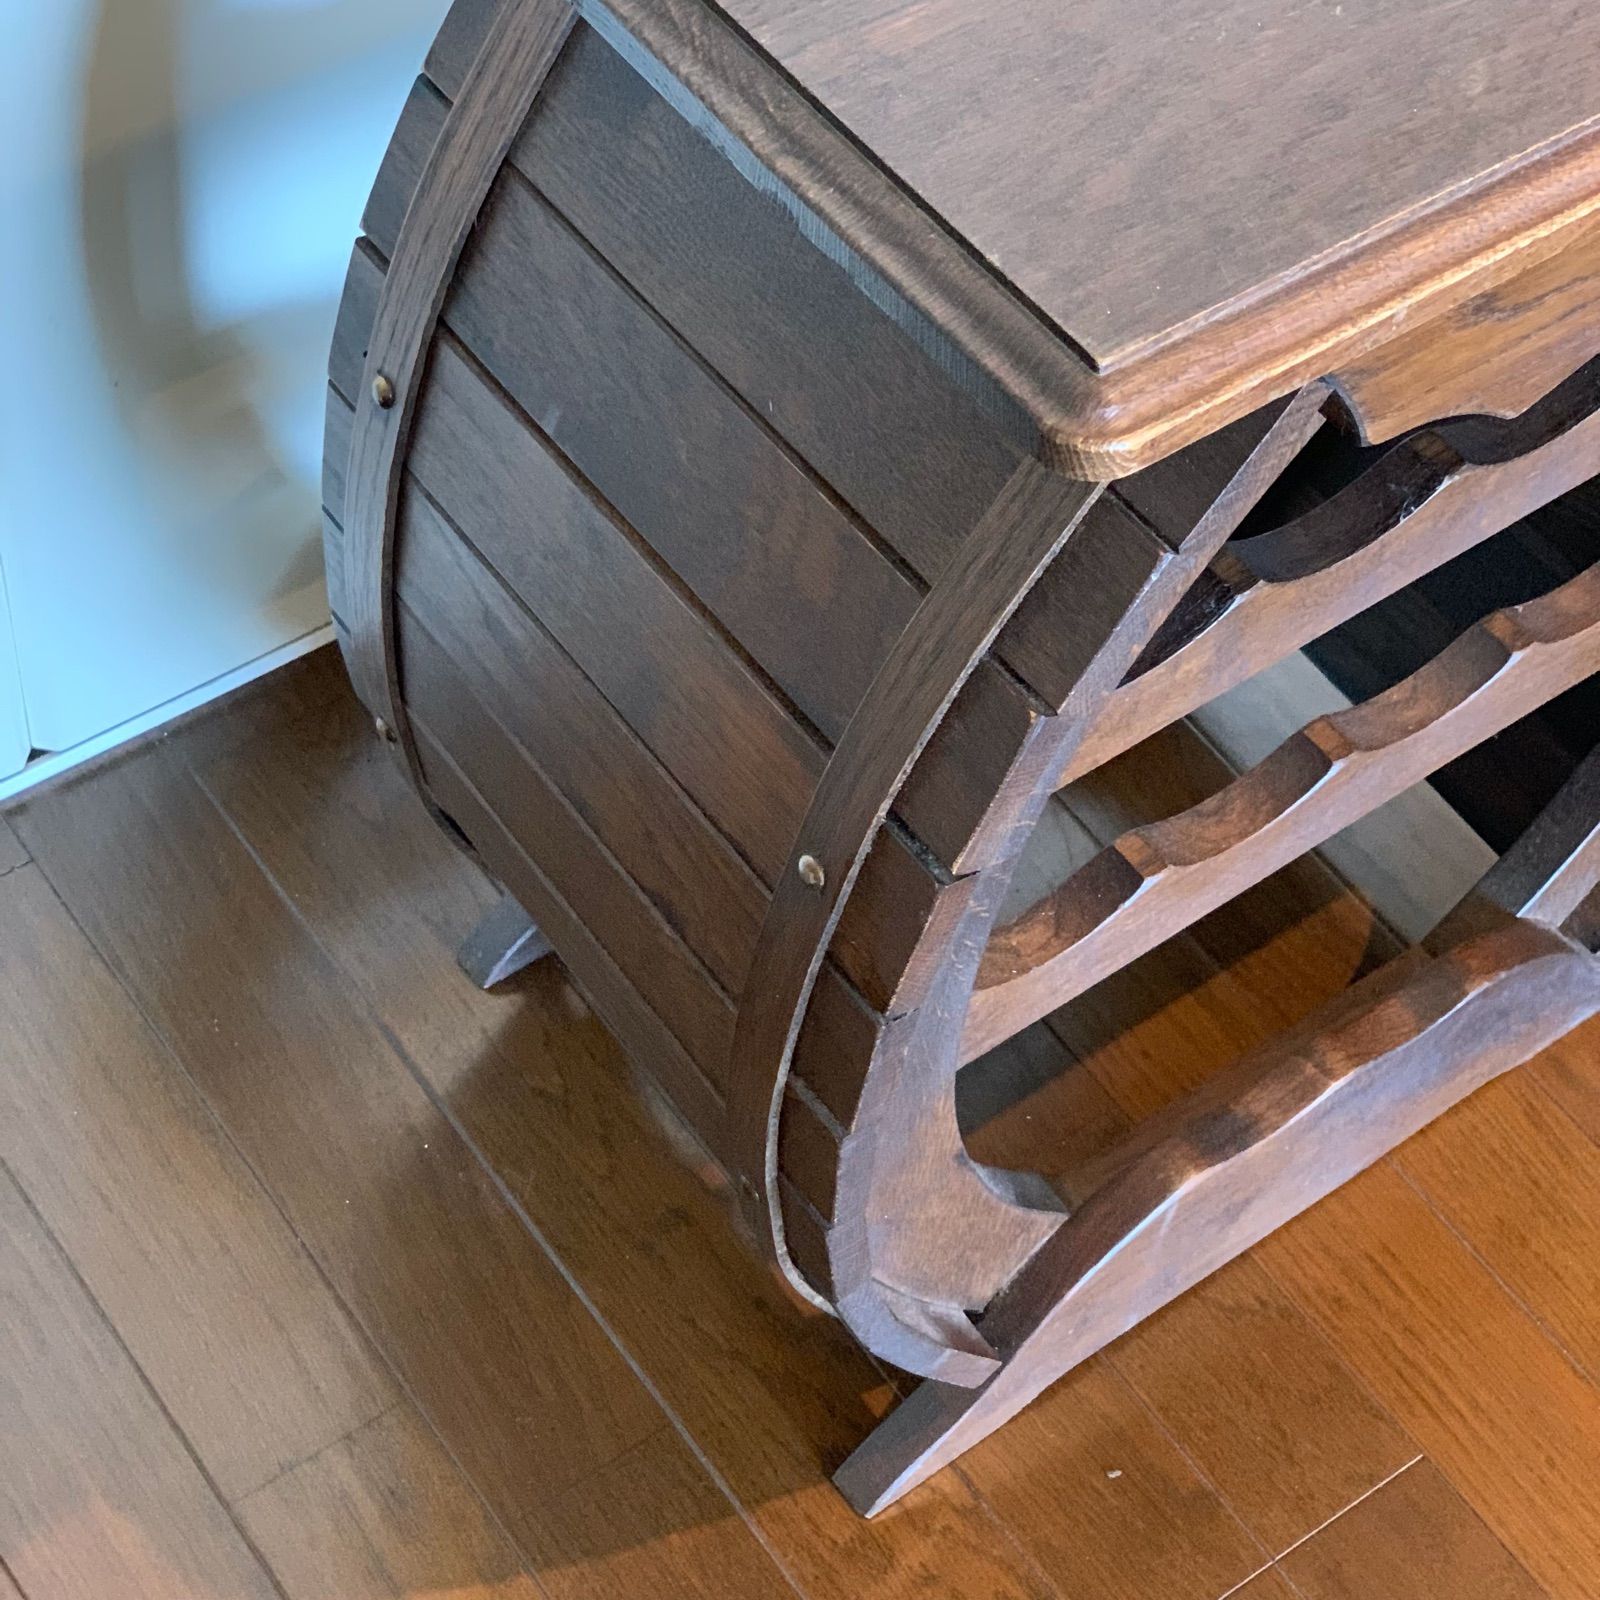 木製 ワインラック 樽型 レトロ サイドテーブル アンティーク調